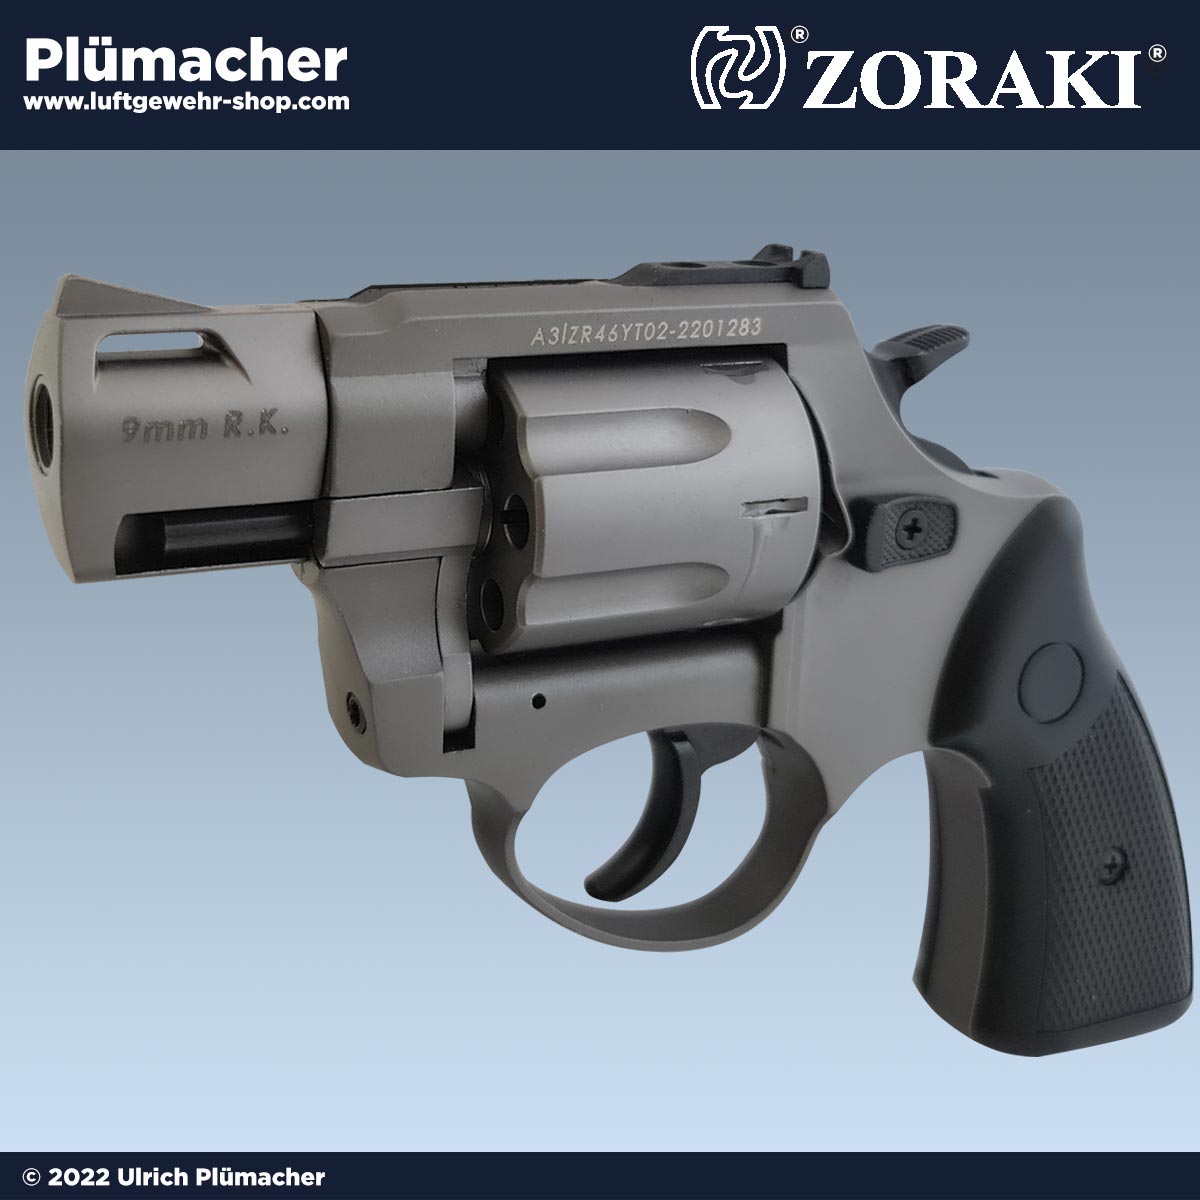 Zoraki R2 2 Zoll titan Schreckschuss Revolver 9 mm. Luftgewehr-Shop -  Luftgewehre, Schreckschusswaffen, CO2 Waffen, Luftpistolen kaufen